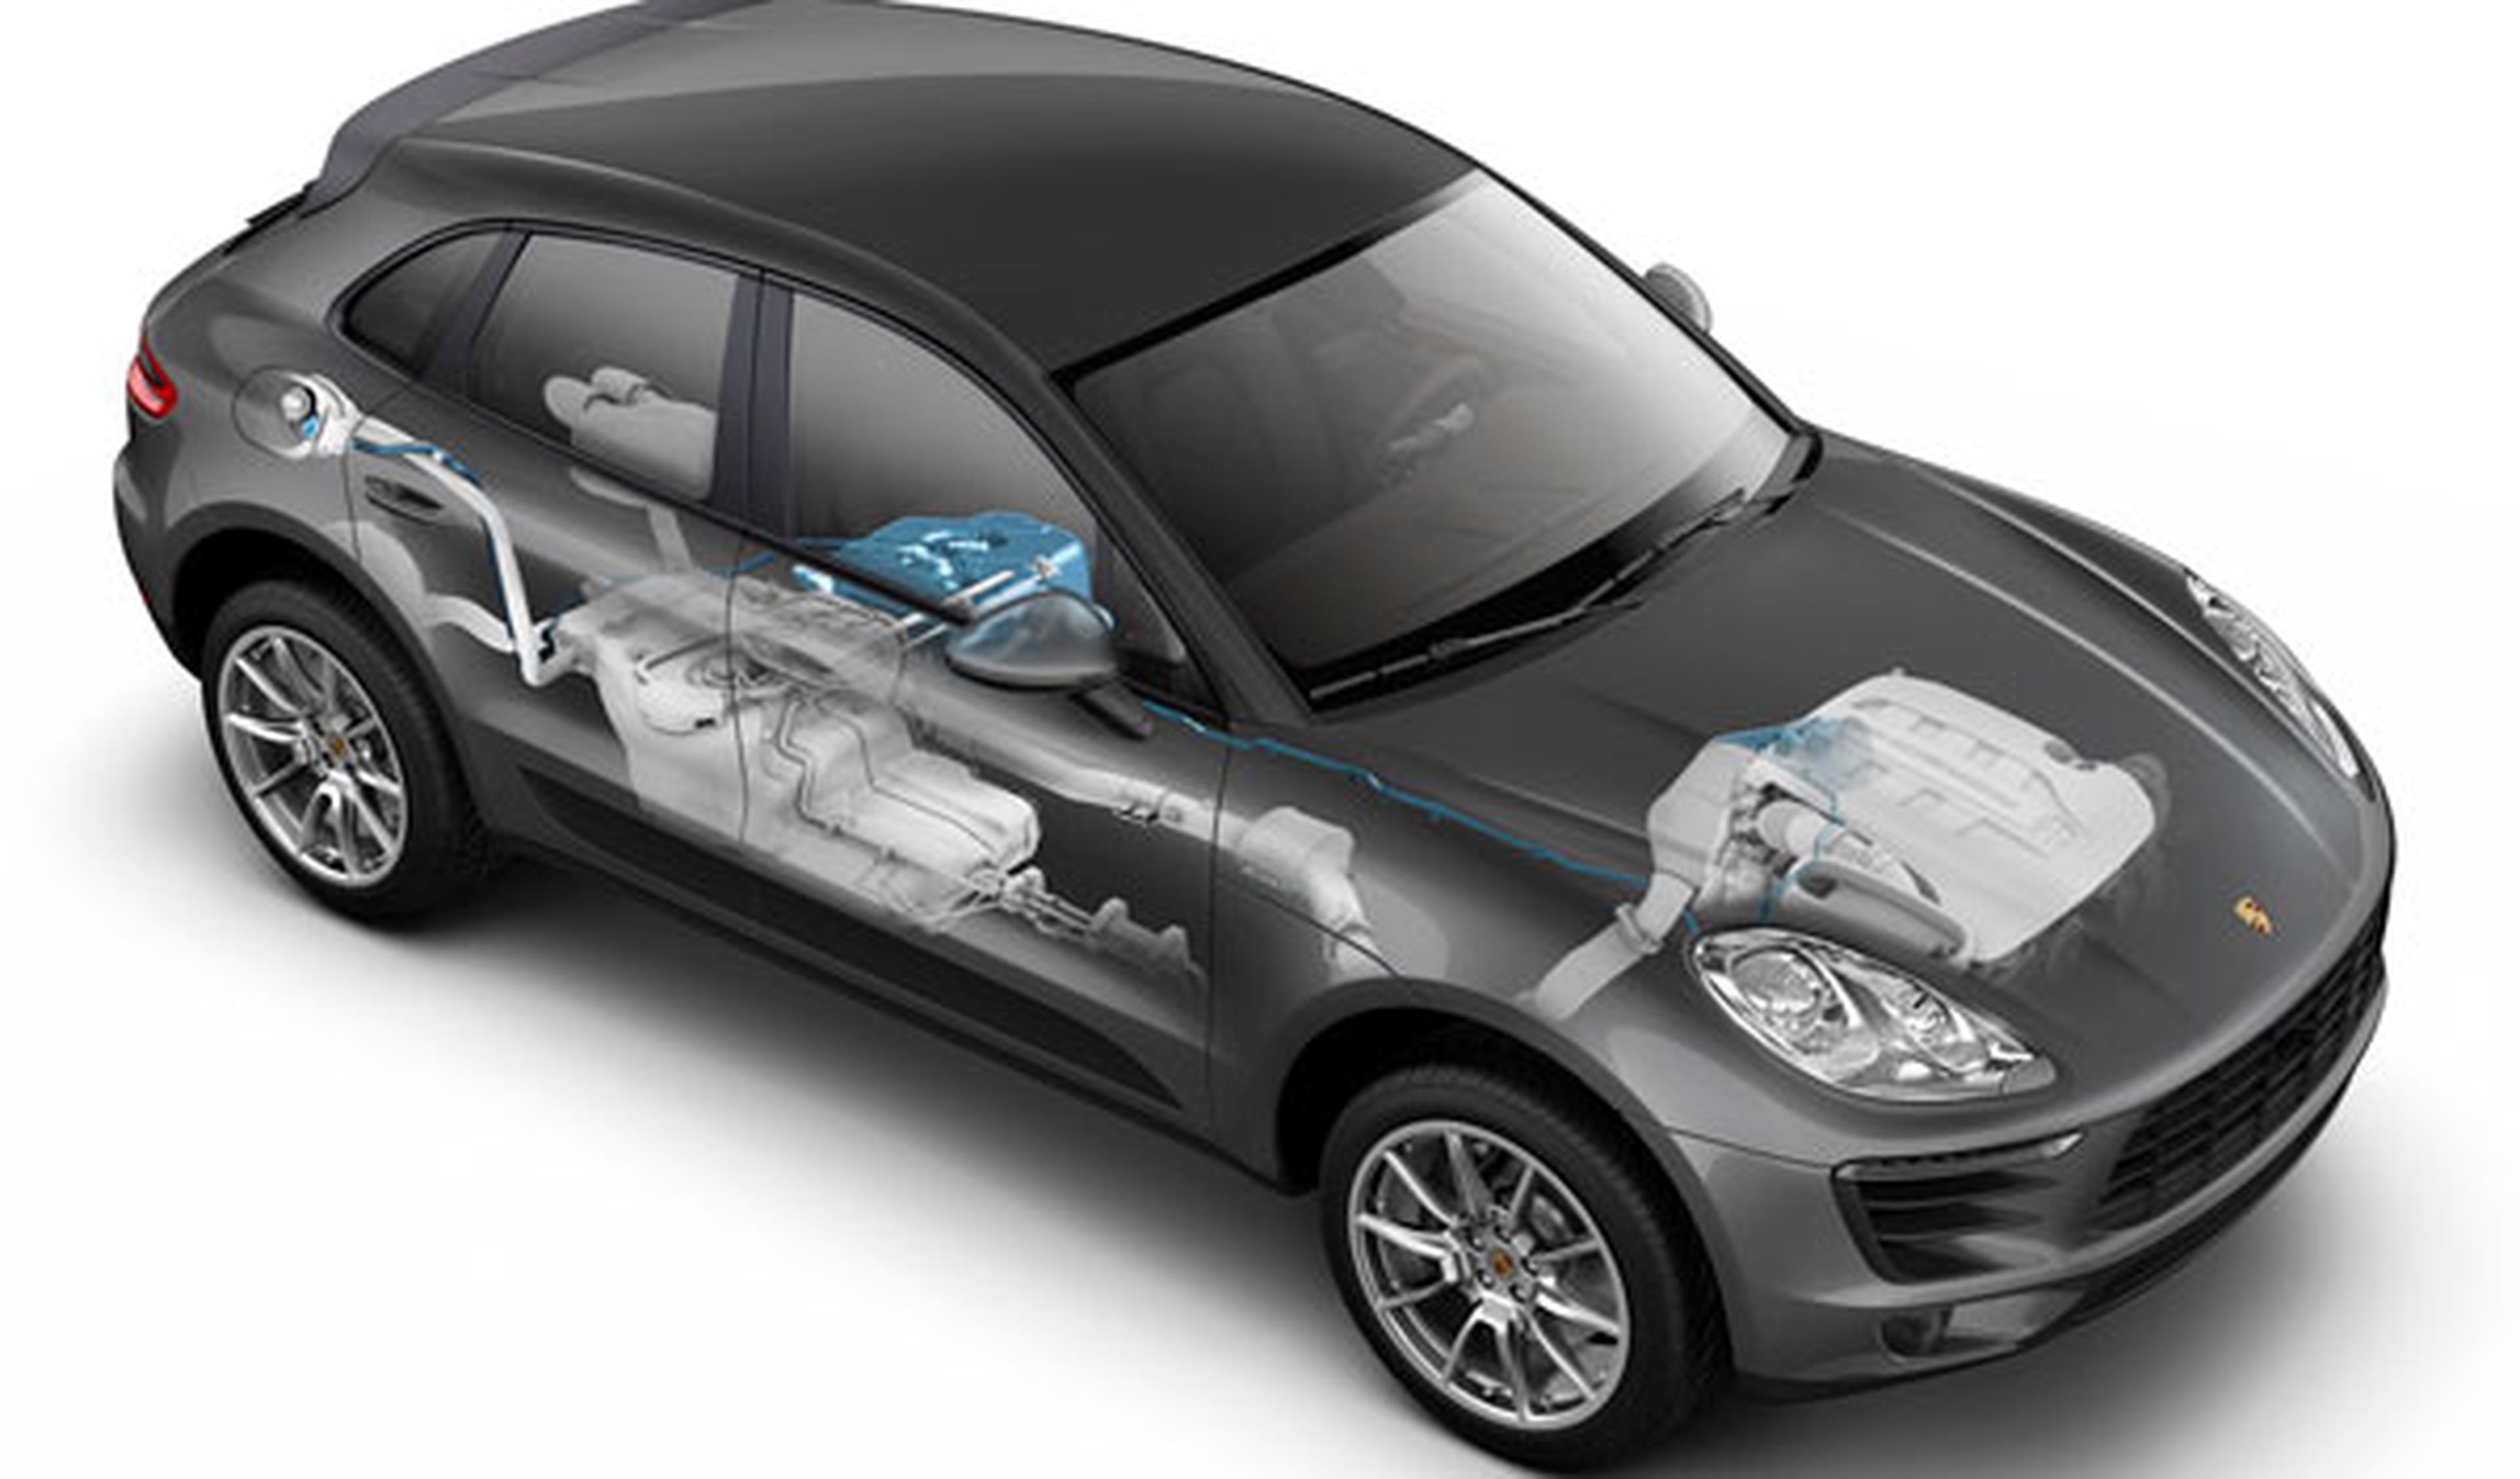 El Porsche Macan Diesel cumple con la Euro VI gracias a un tratado químico con AdBlue (Urea)